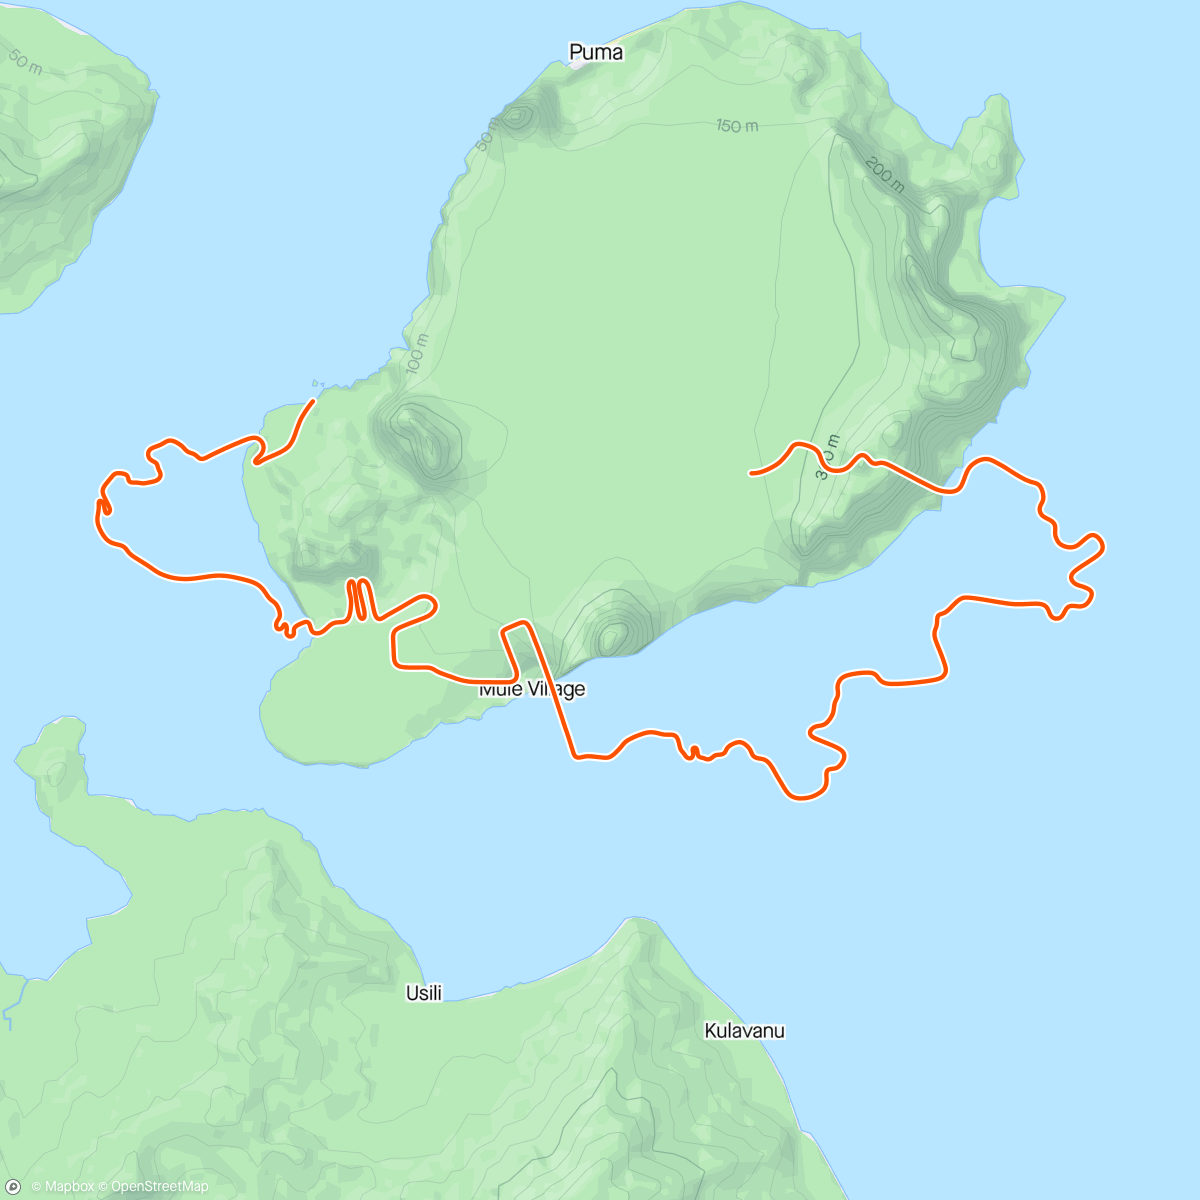 Карта физической активности (Zwift - Spiral into the Volcano in Watopia)